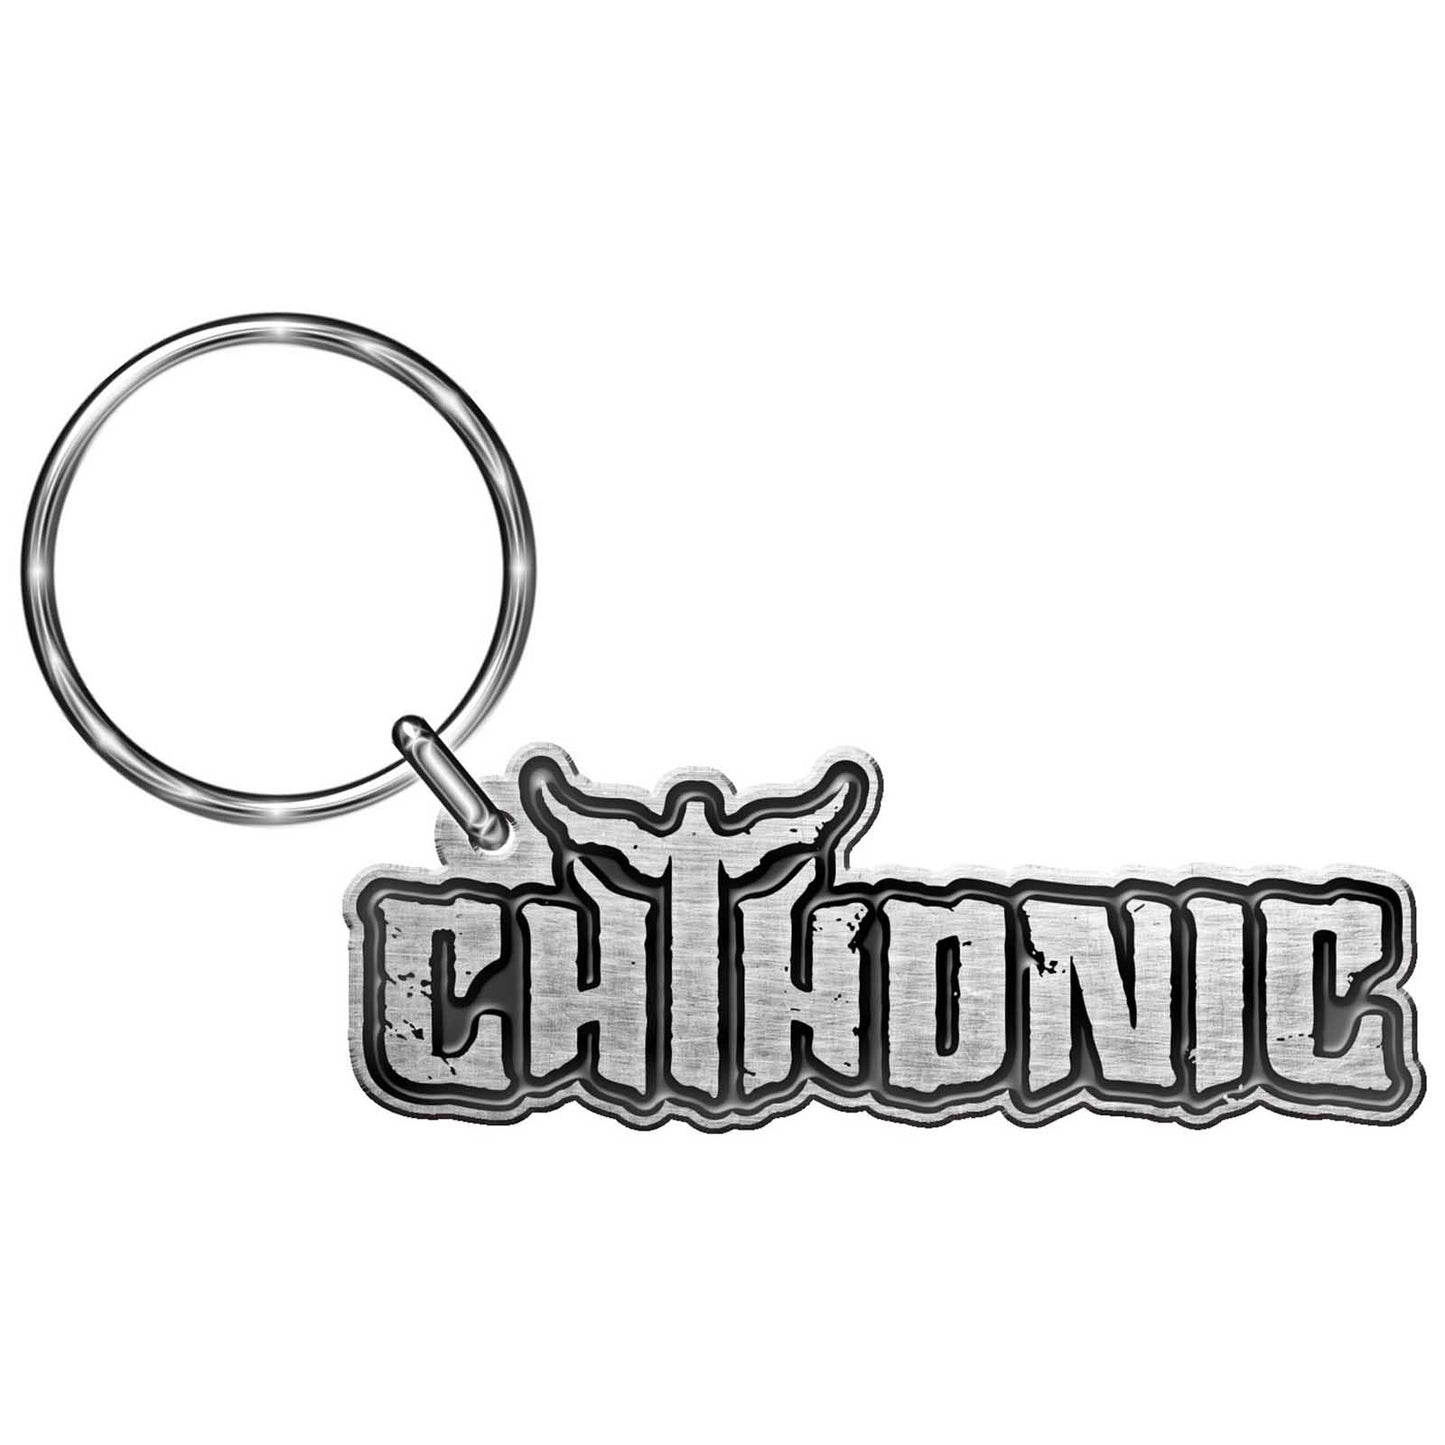 Chthonic Keychain: Logo